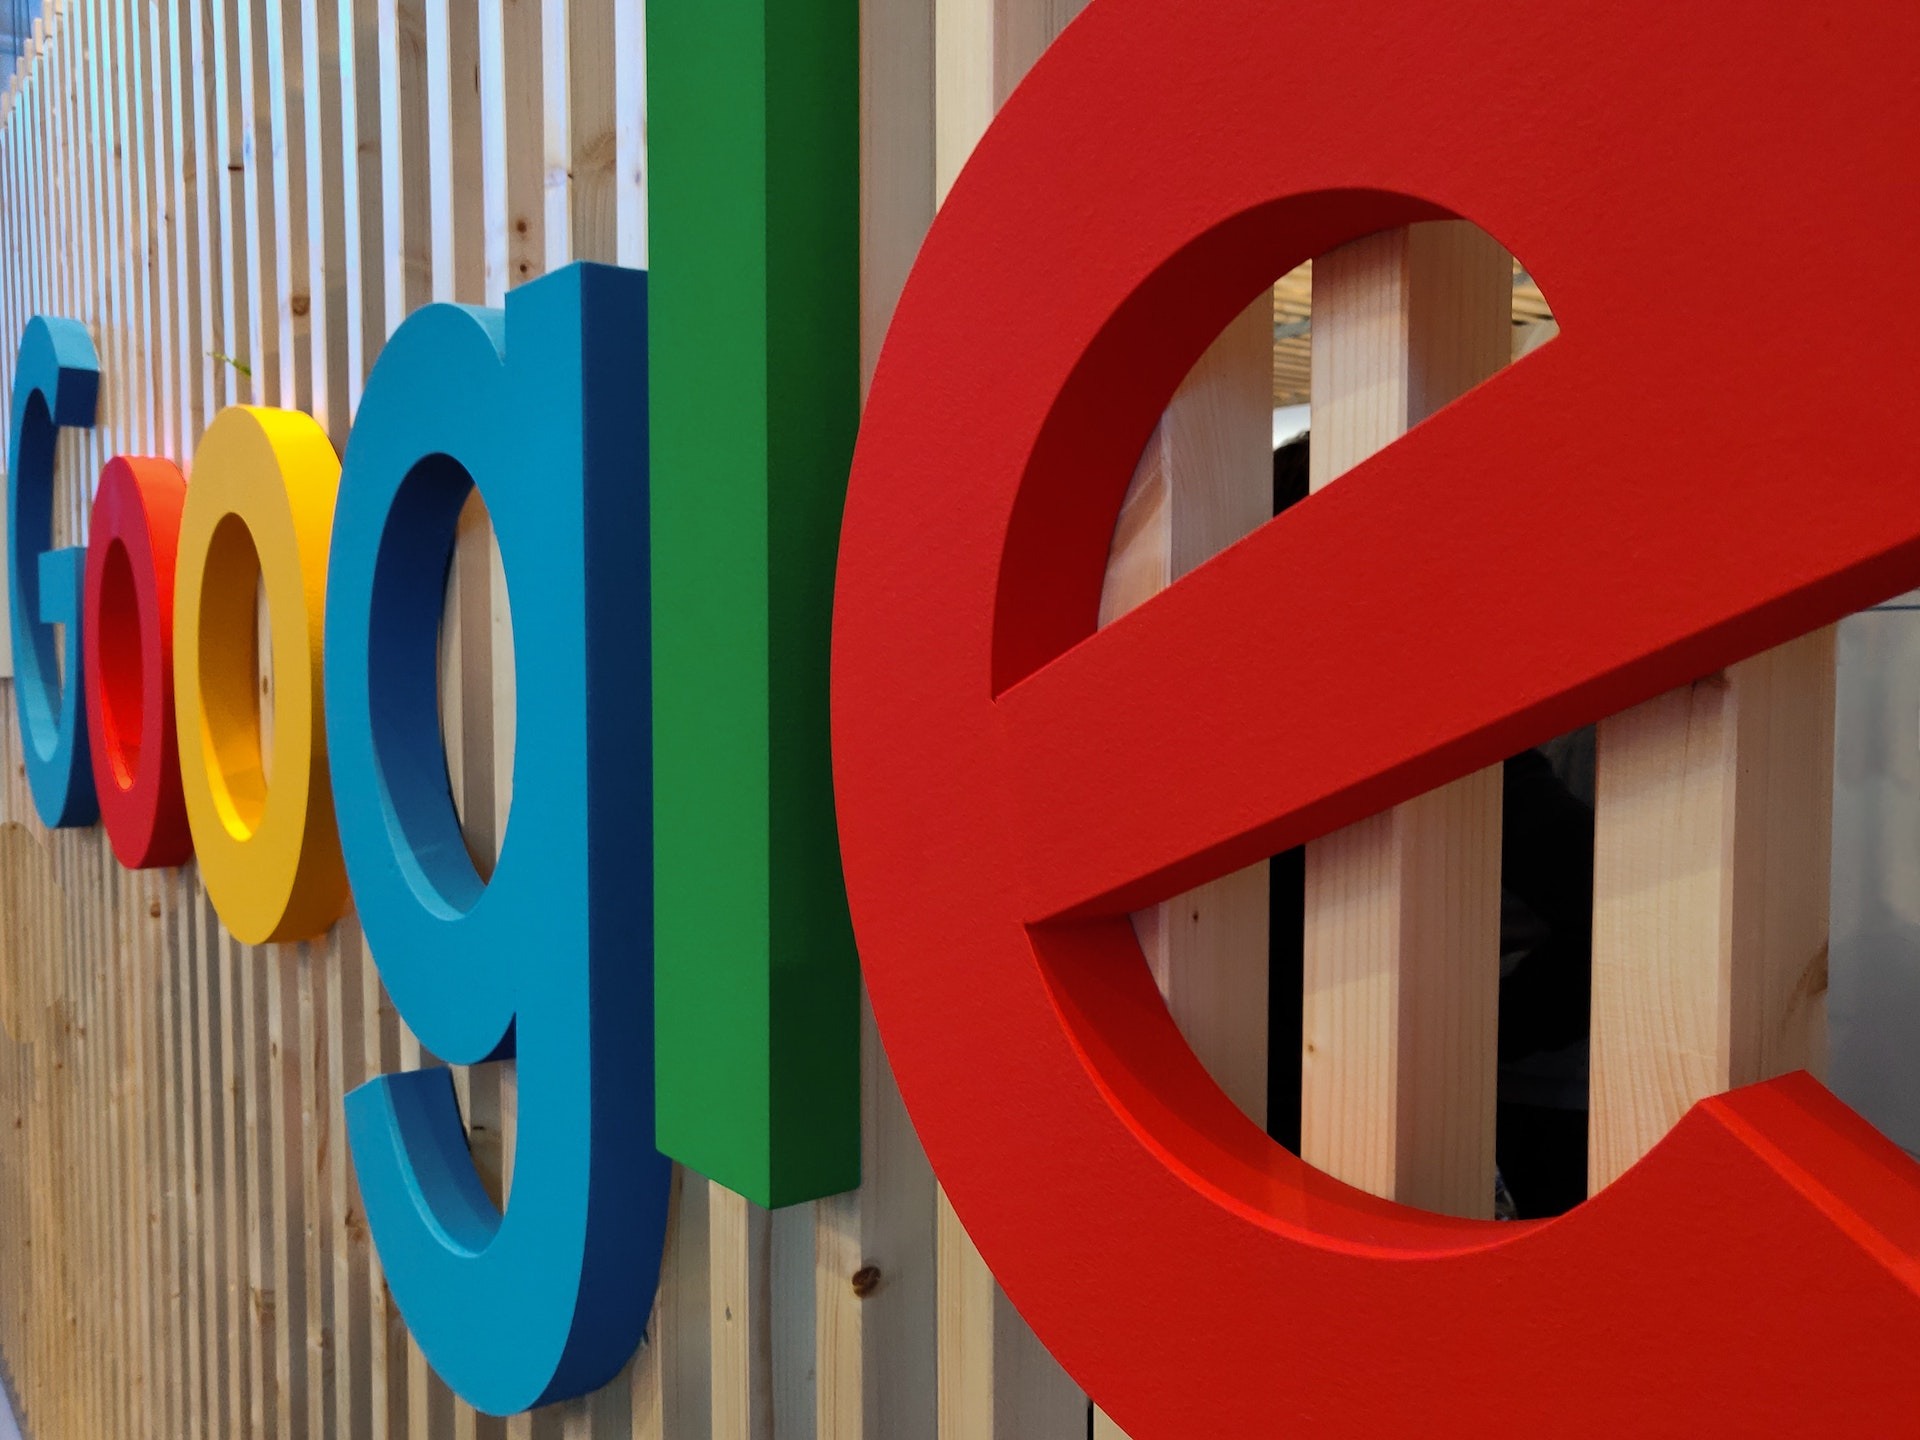 Google: a rischio multa miliardaria per monopolio nello shopping online